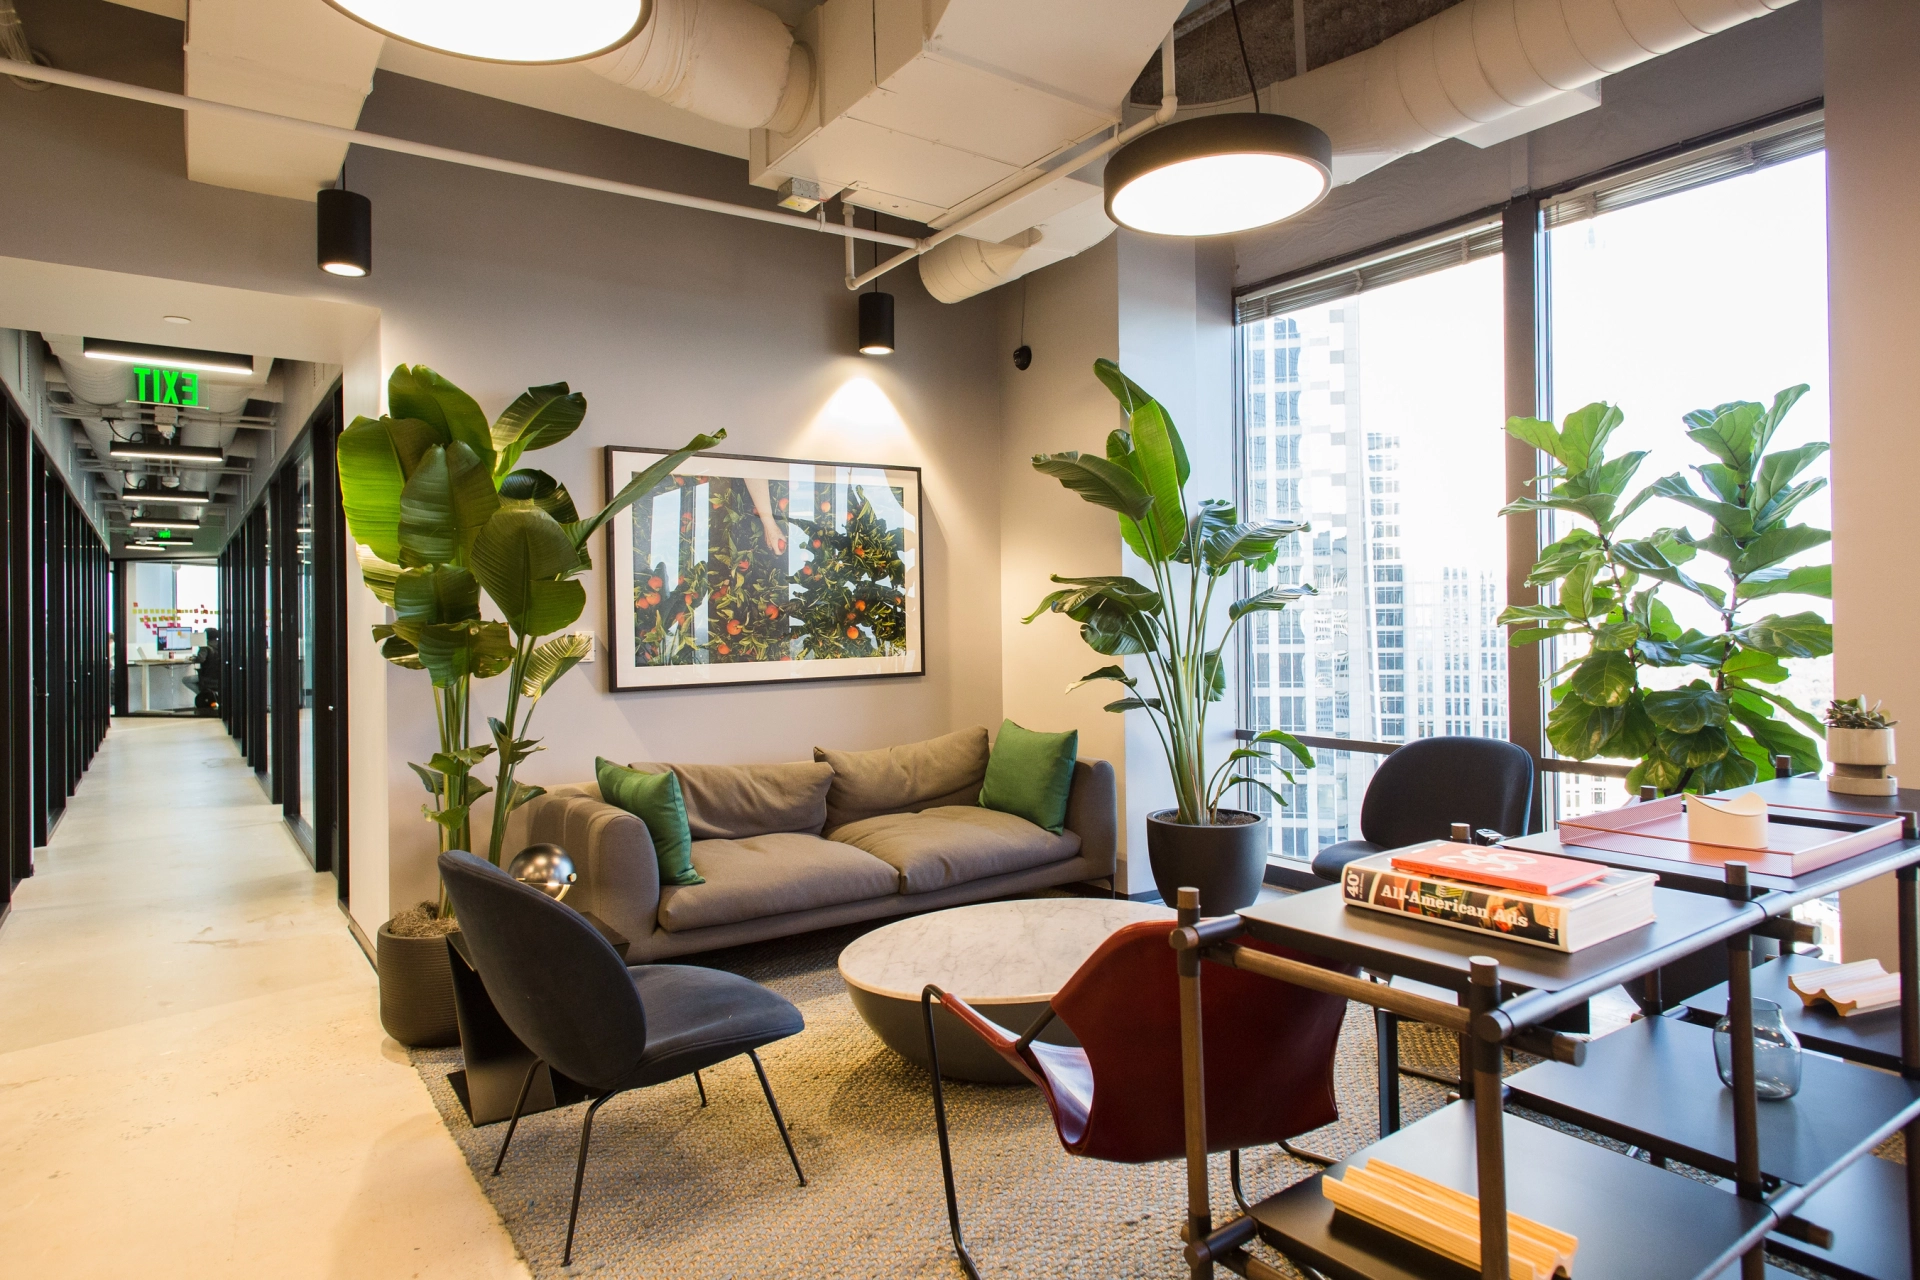 Moderne coworking-lounge met comfortabele stoelen en potplanten bij een raam met uitzicht op de stad.